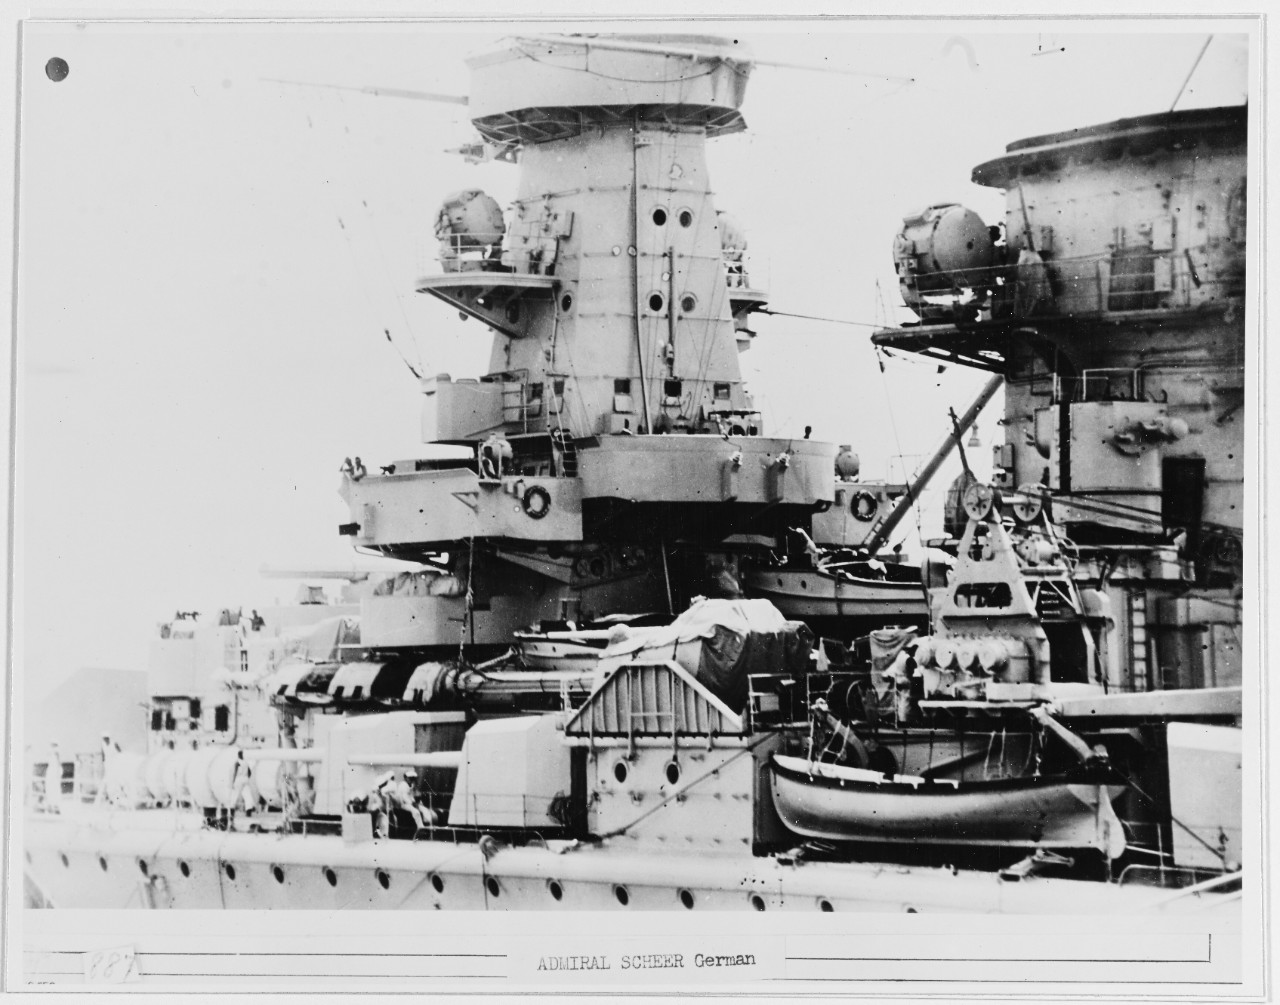 ADMIRAL SCHEER German Armored Ship, 1933-45